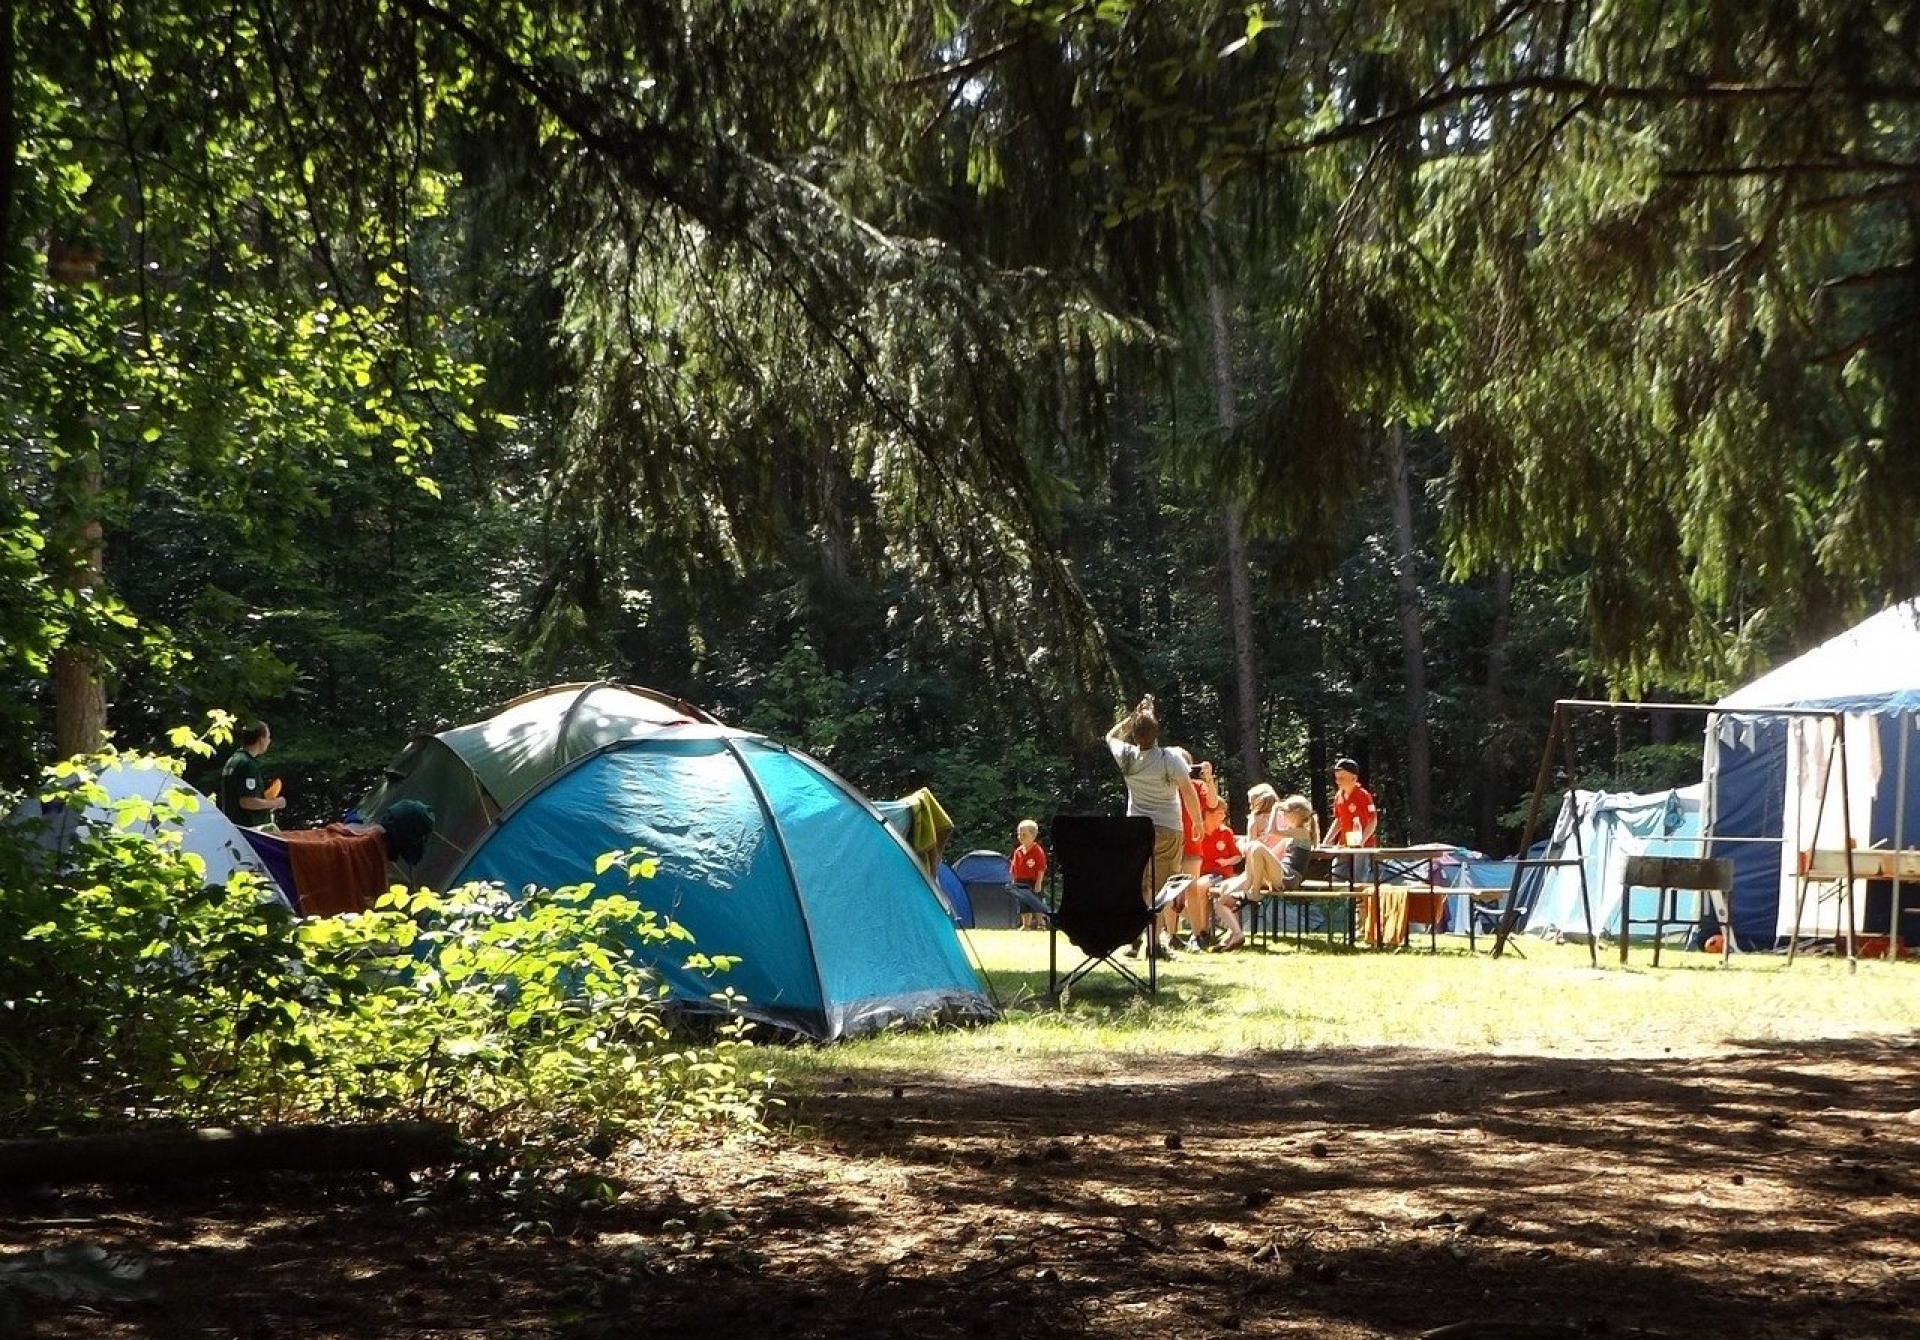 Séjour en camping : quatre conseils avant de s'engager